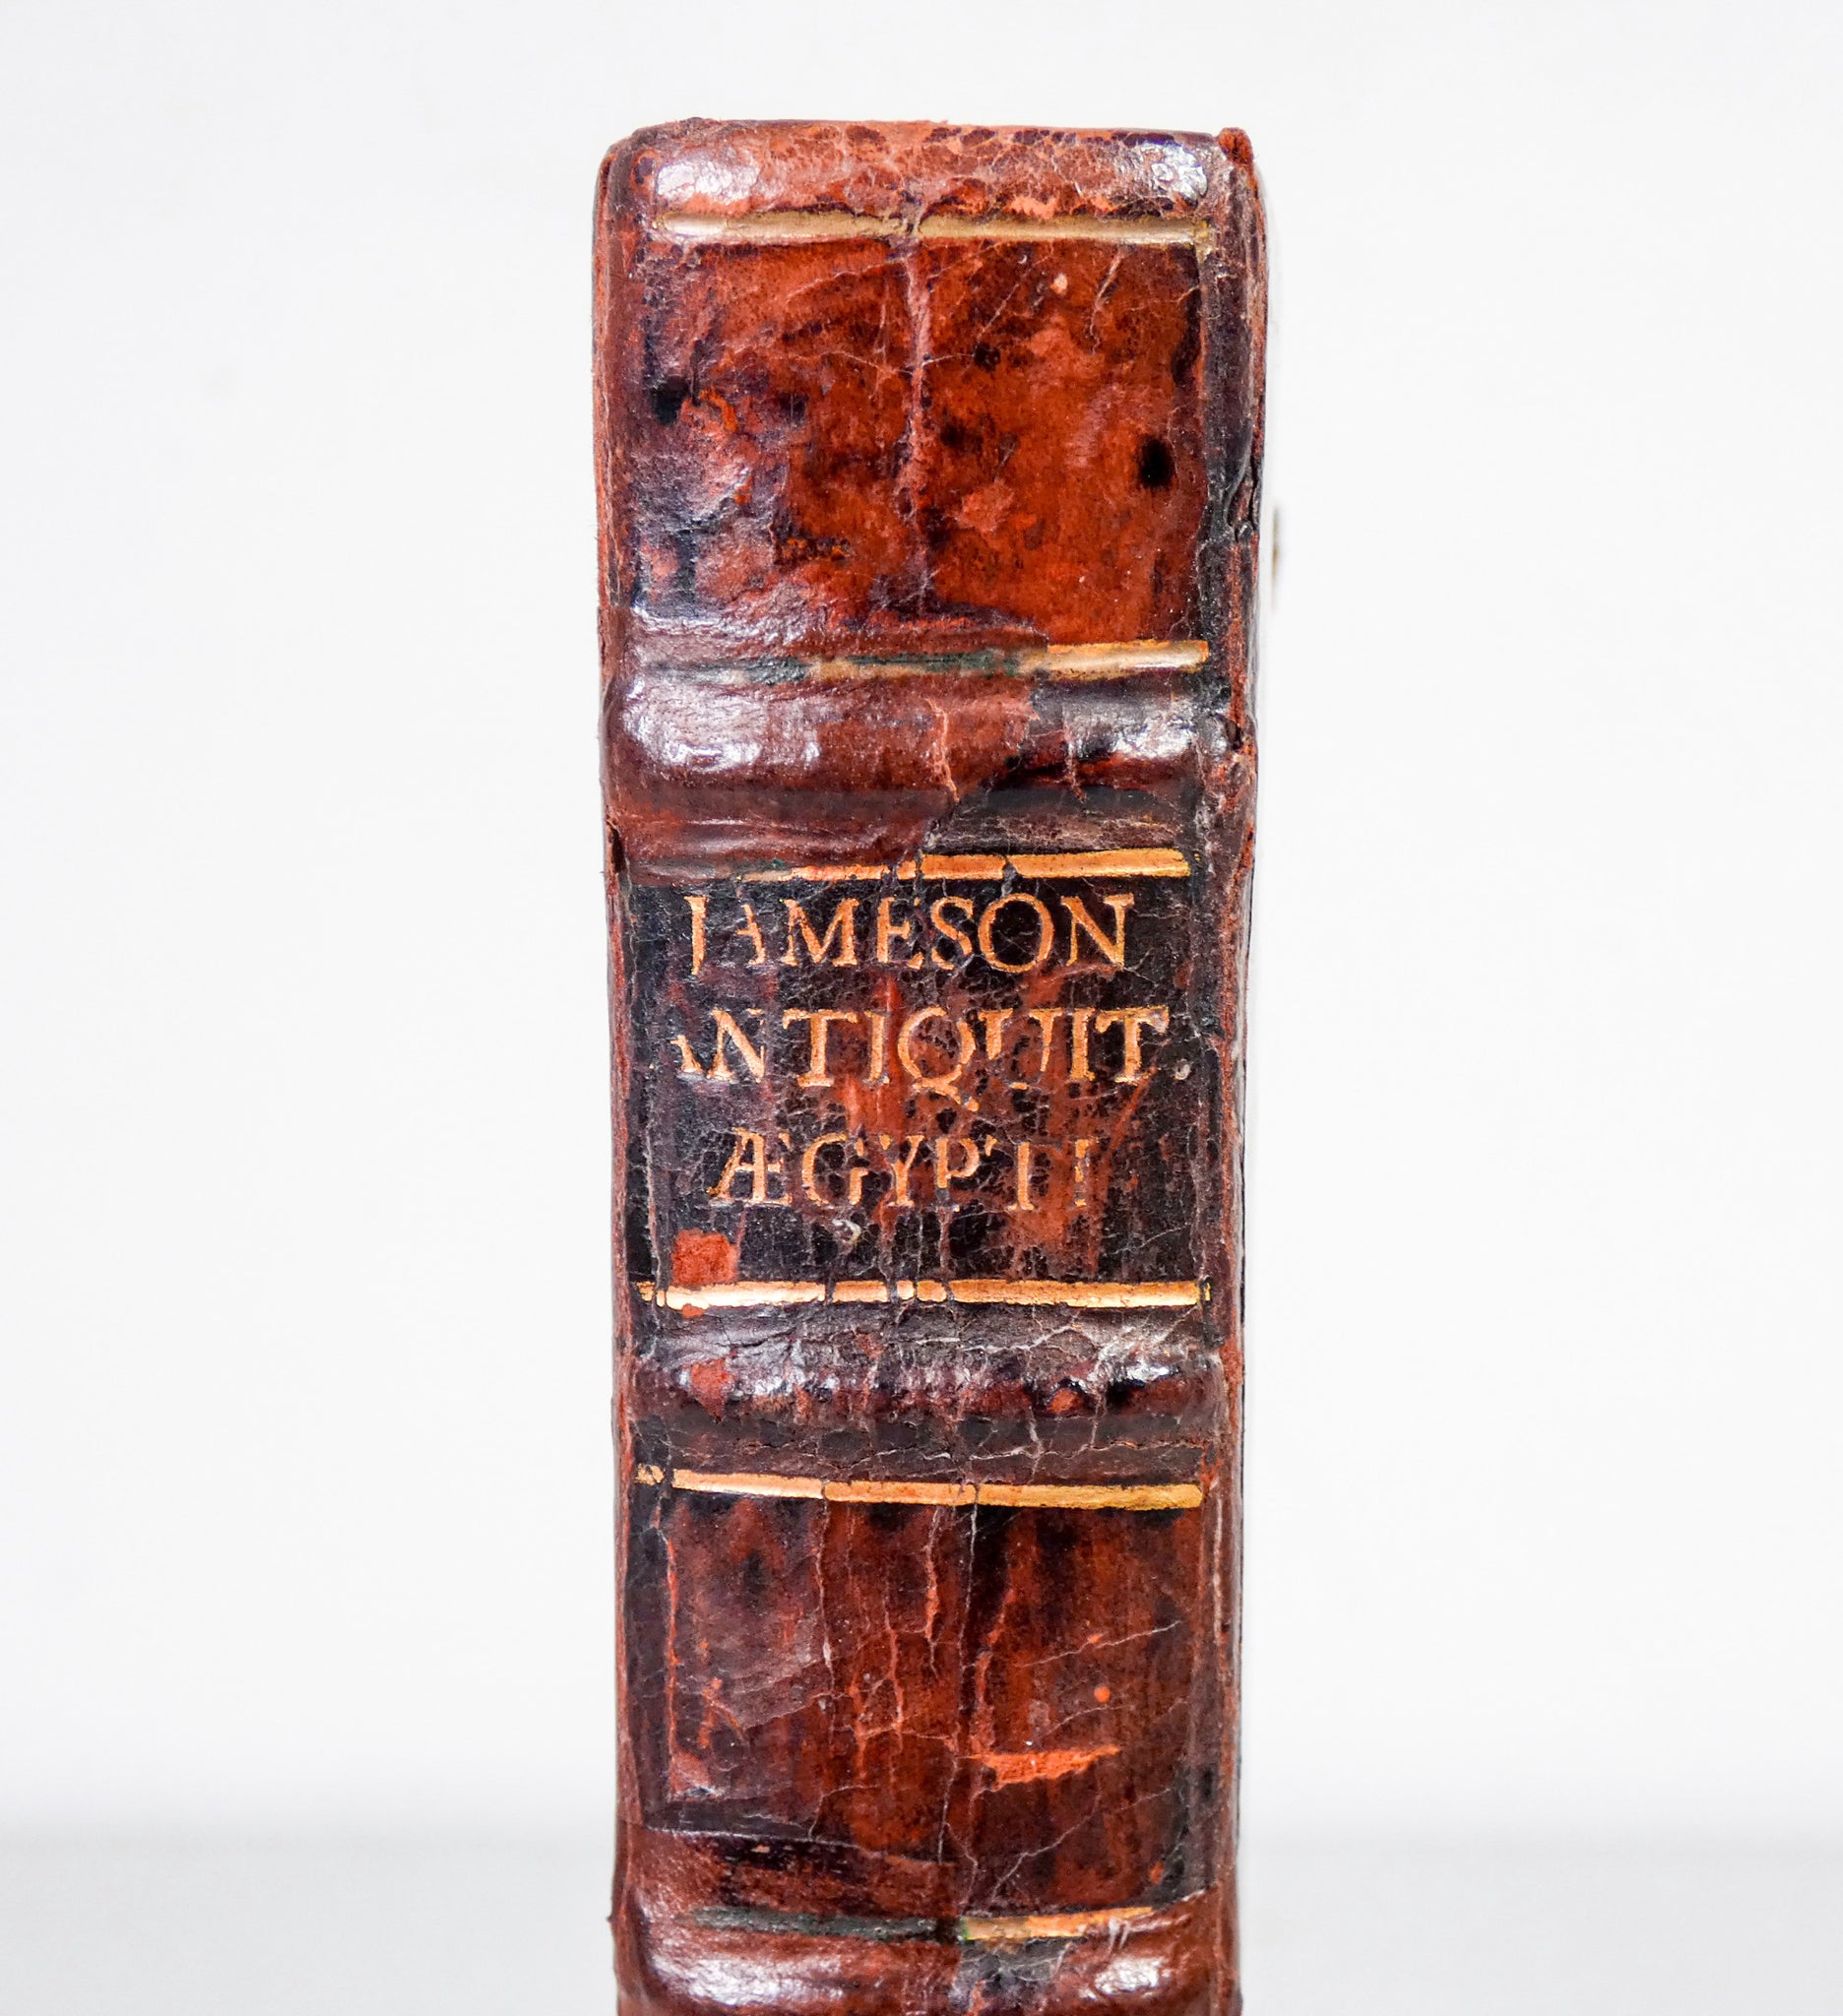 volume spicilegia antiquitatum aegypti 1720 jameson gulielmus glasgow antico 